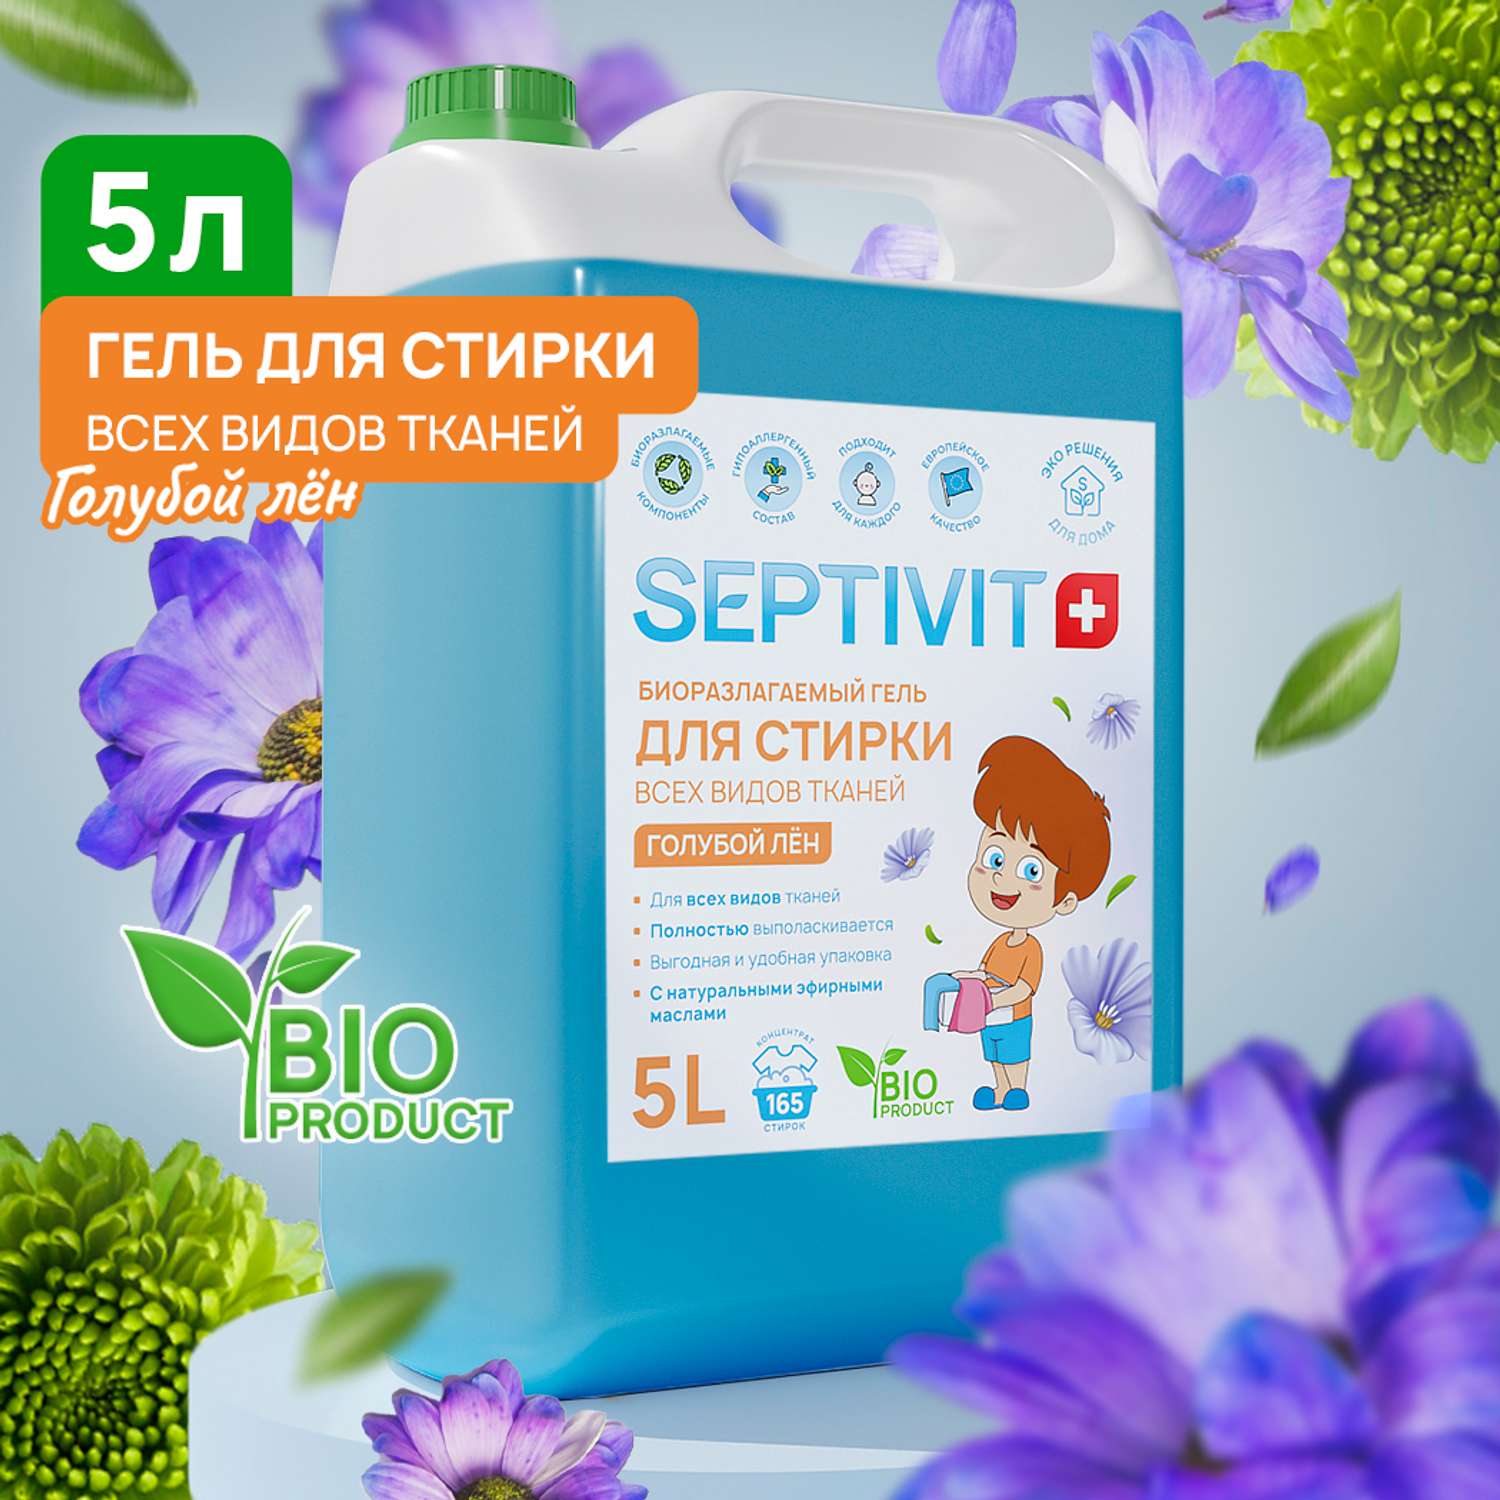 Гель для стирки SEPTIVIT Premium для всех видов тканей с ароматом Голубой лен 5л - фото 1